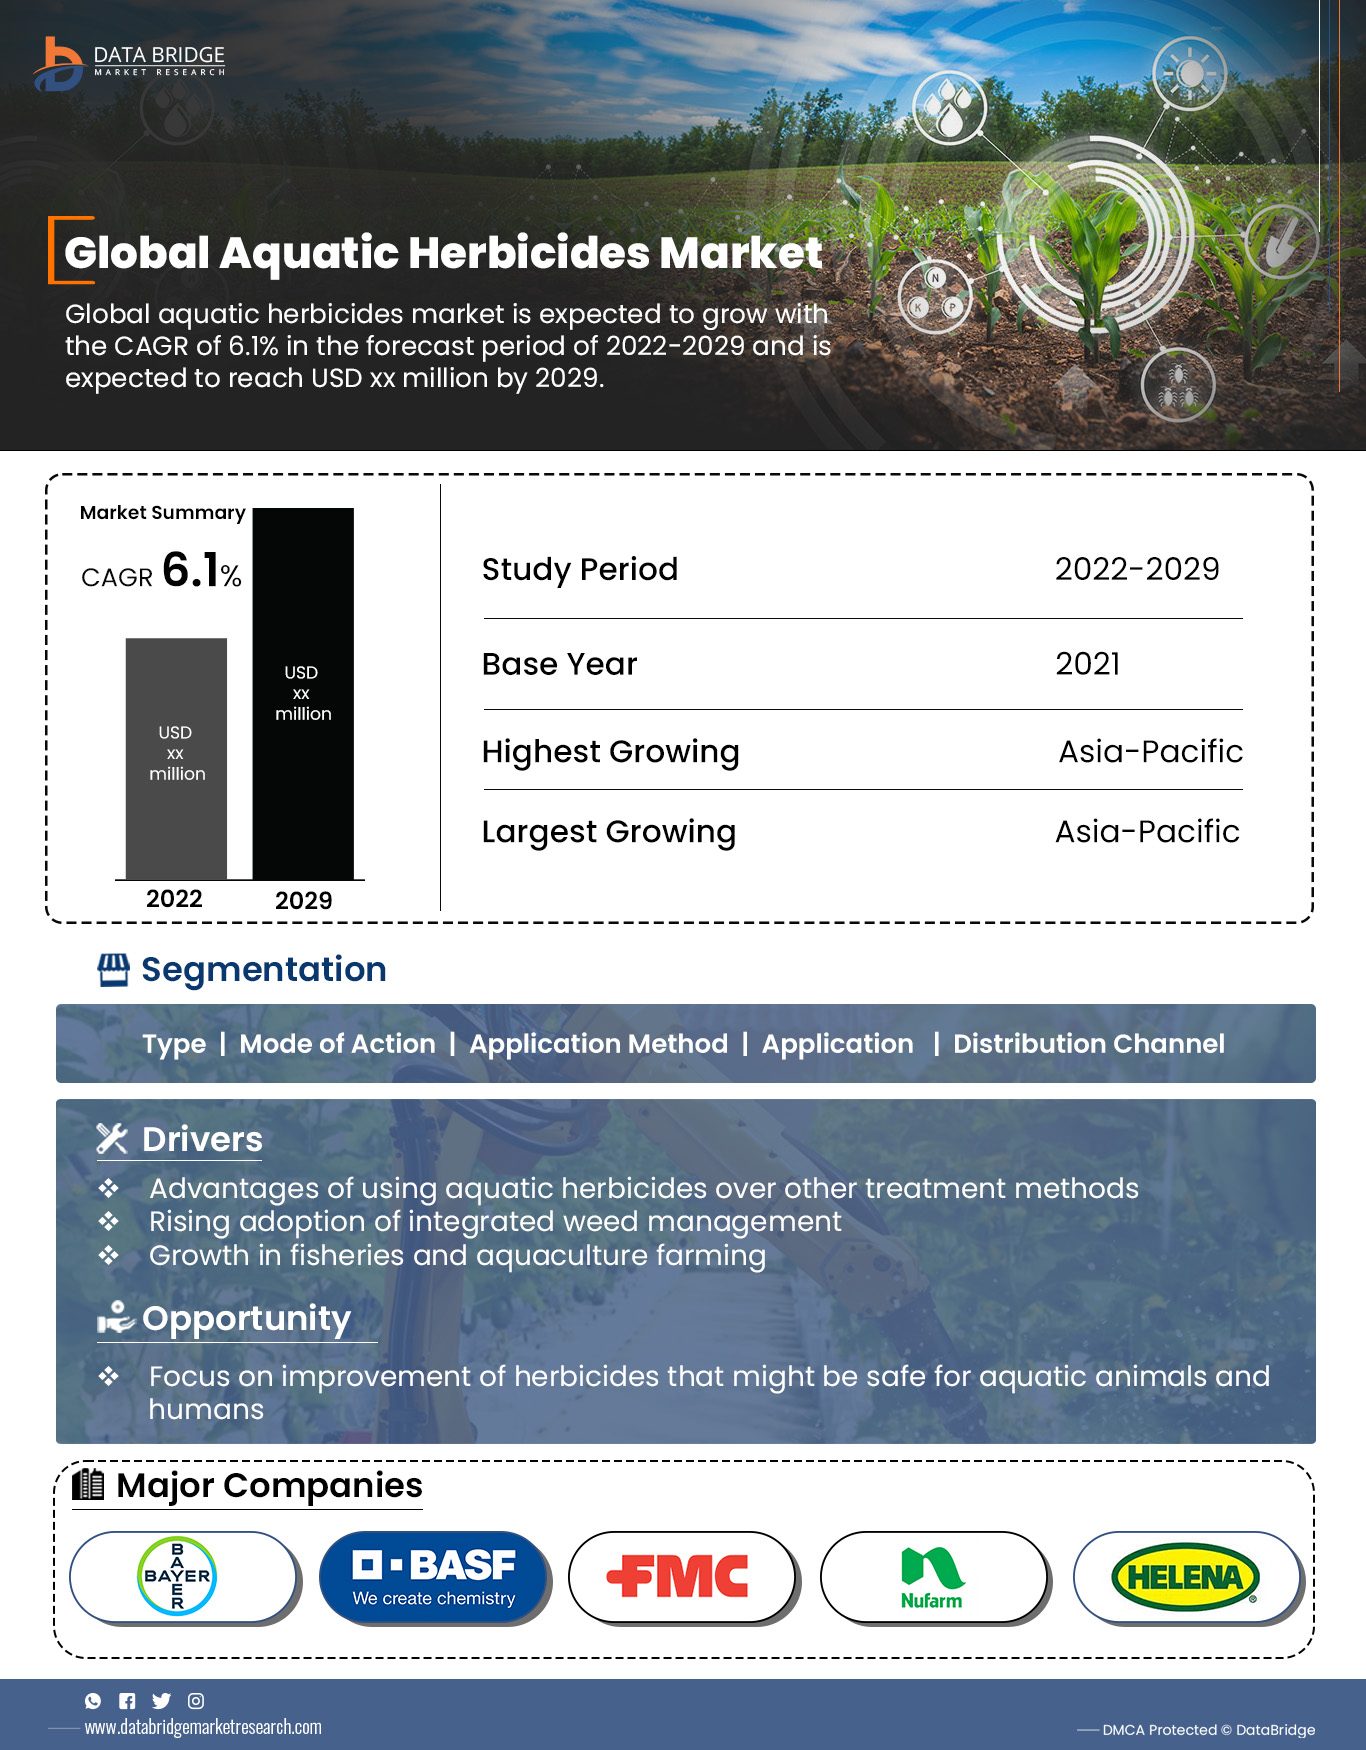 Aquatic Herbicides Market